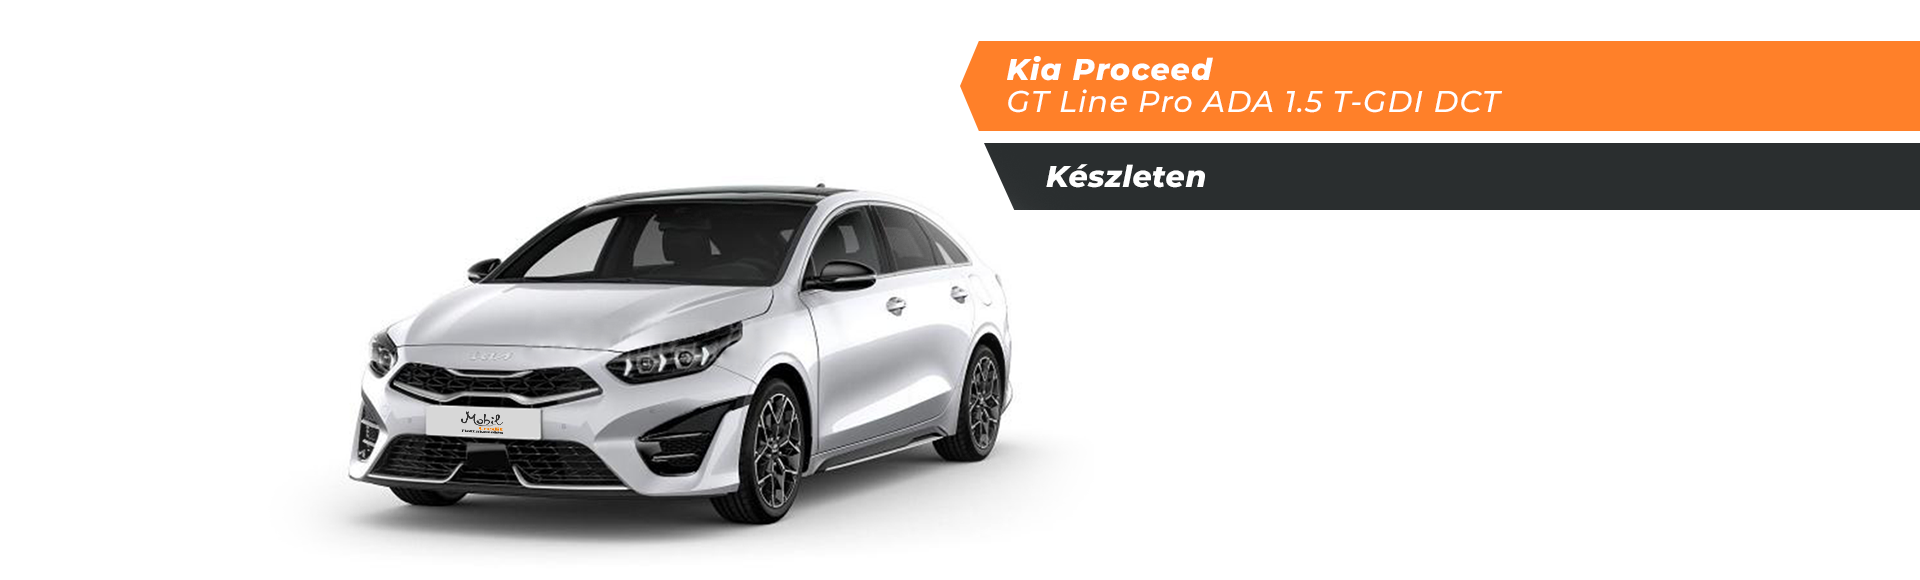 Kia Proceed GT Line Pro ADA 1.5 T-GDI DCT